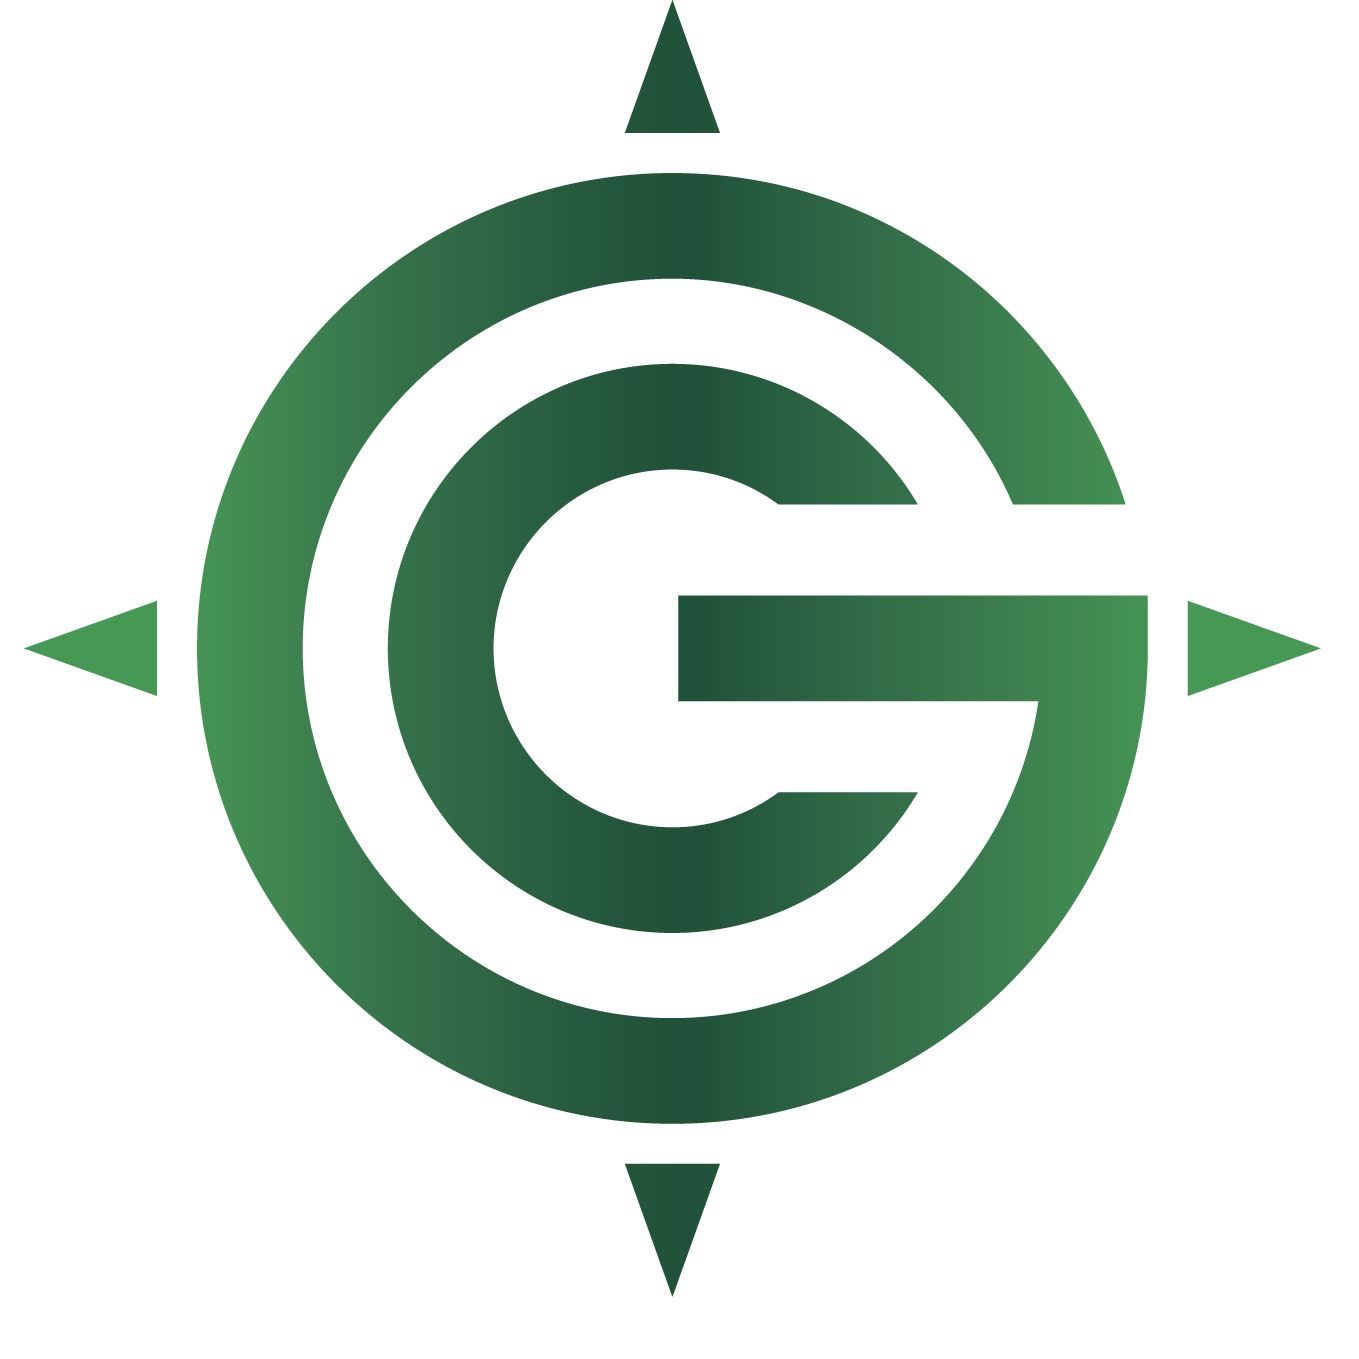 Green Compass logo